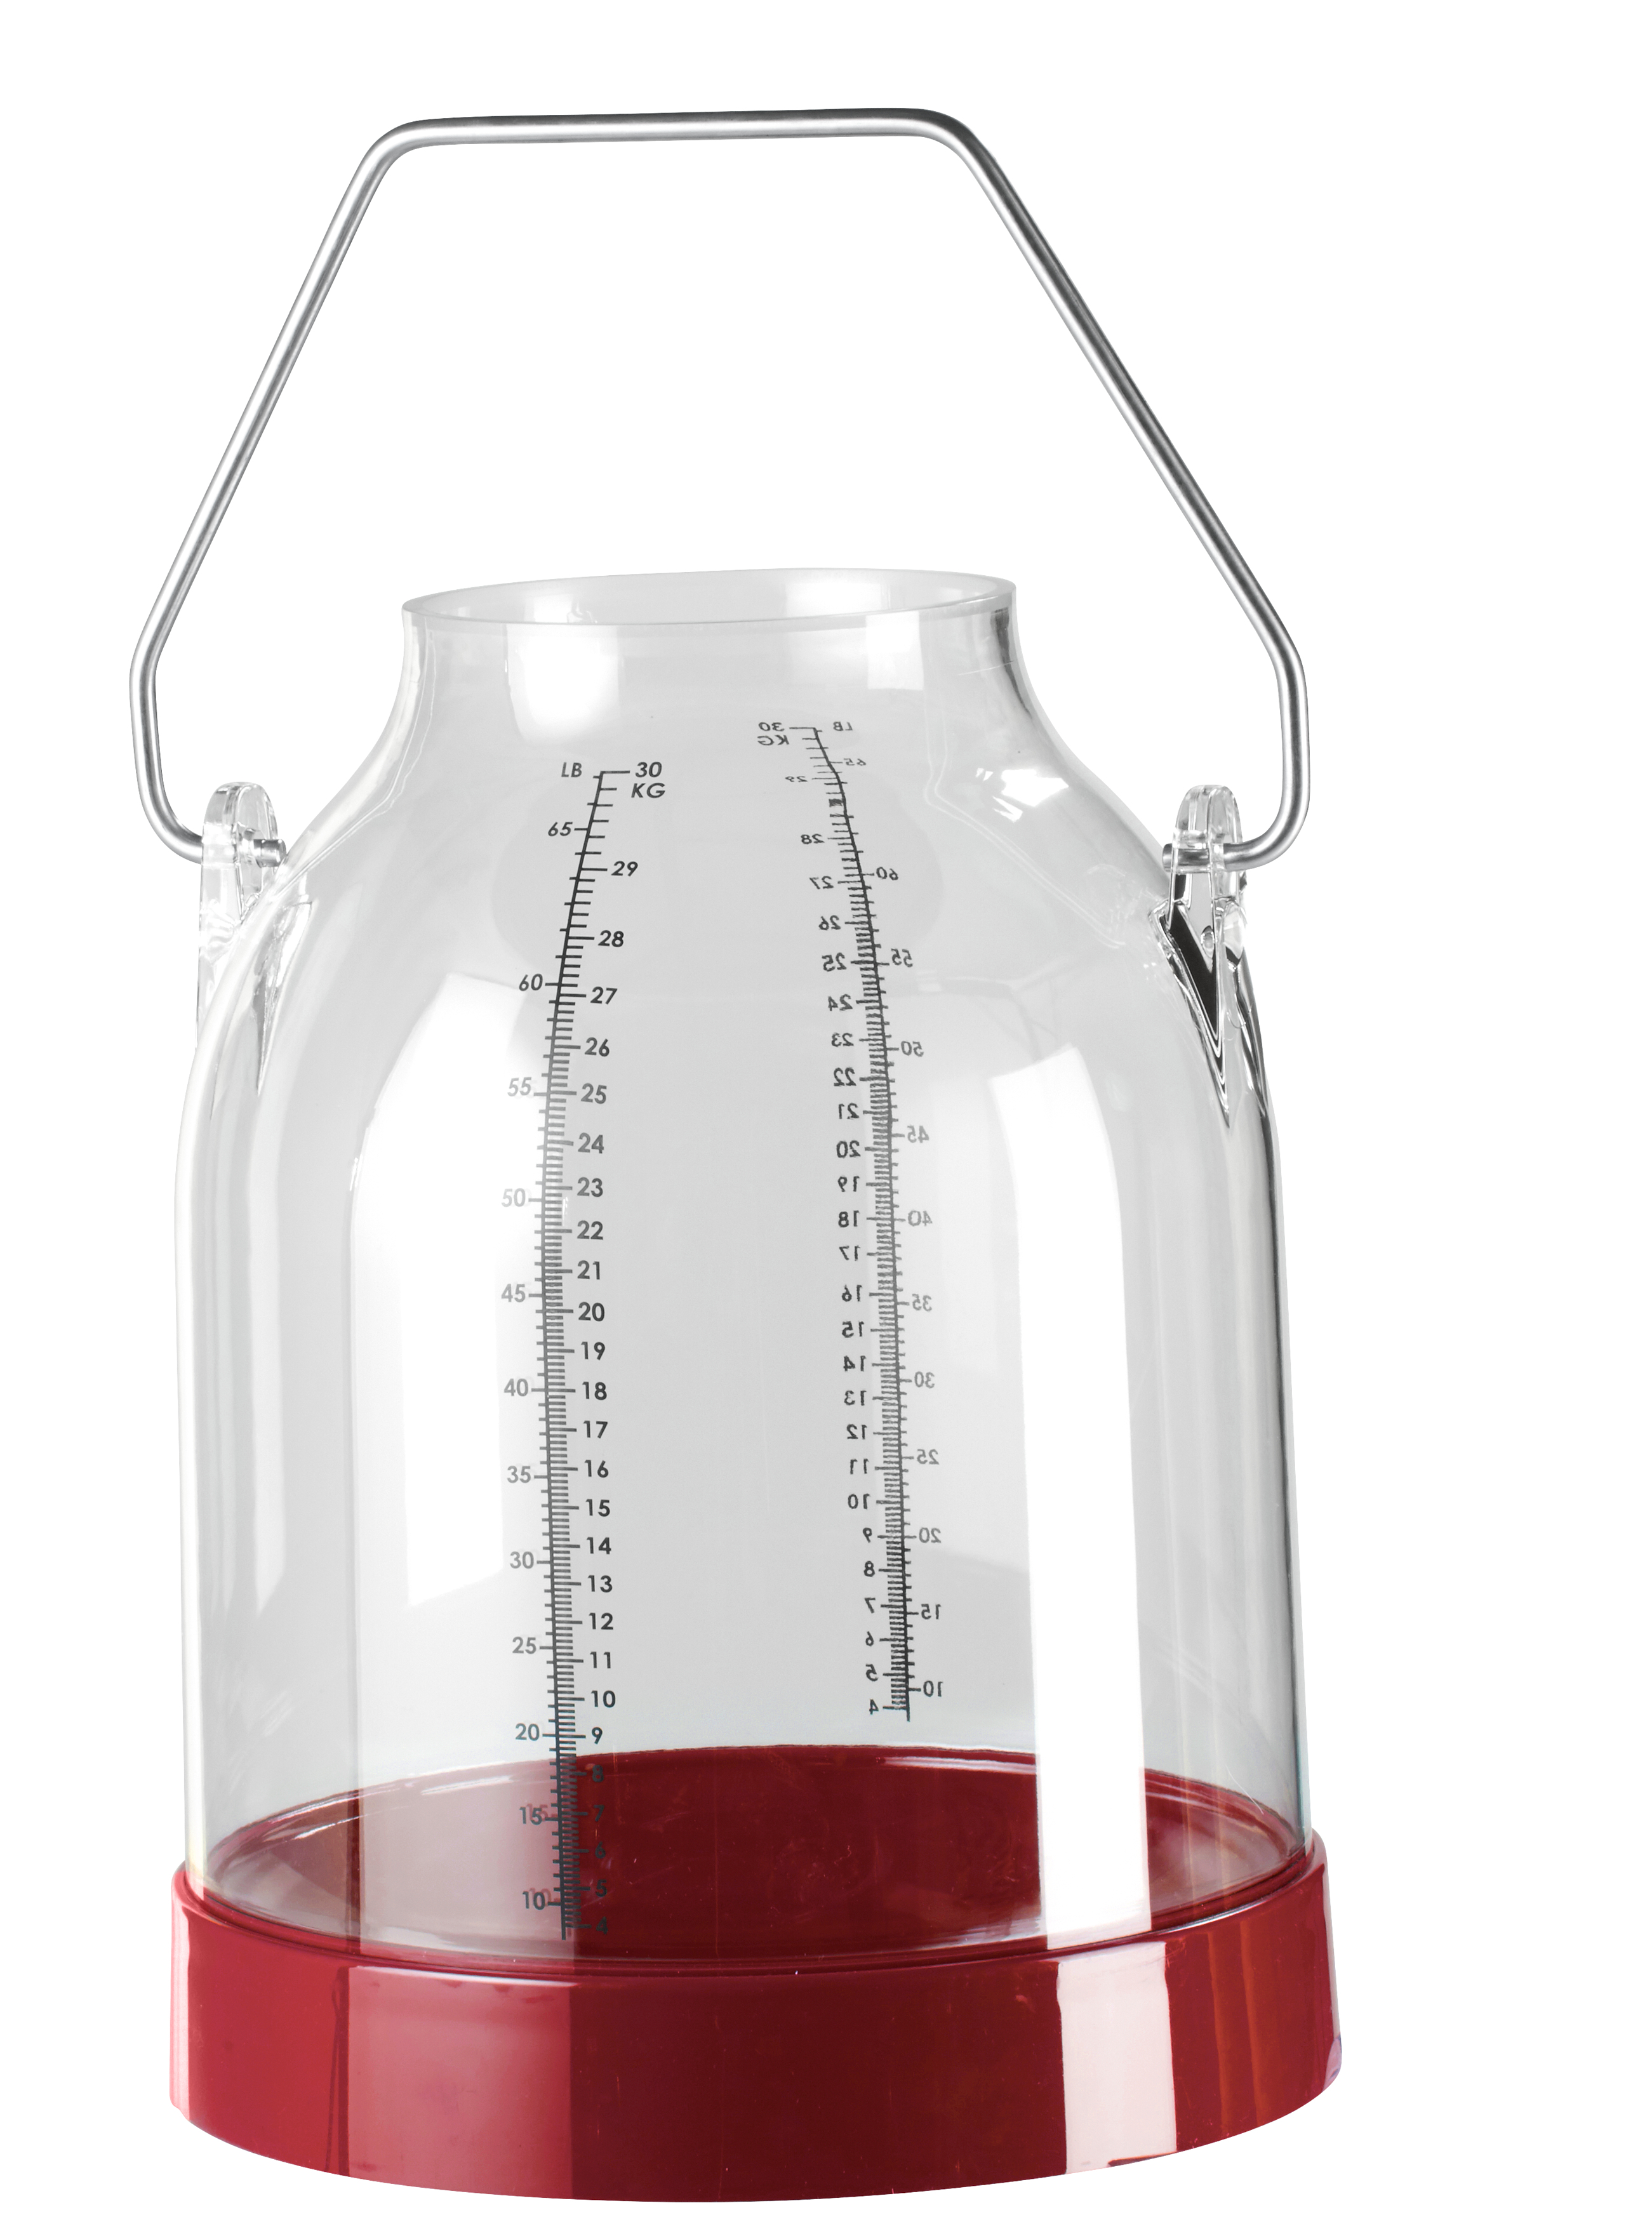 Kunststoff Melkeimer, 30 Liter, rot, Bügelhöhe 117 mm für DeLaval-Deckel